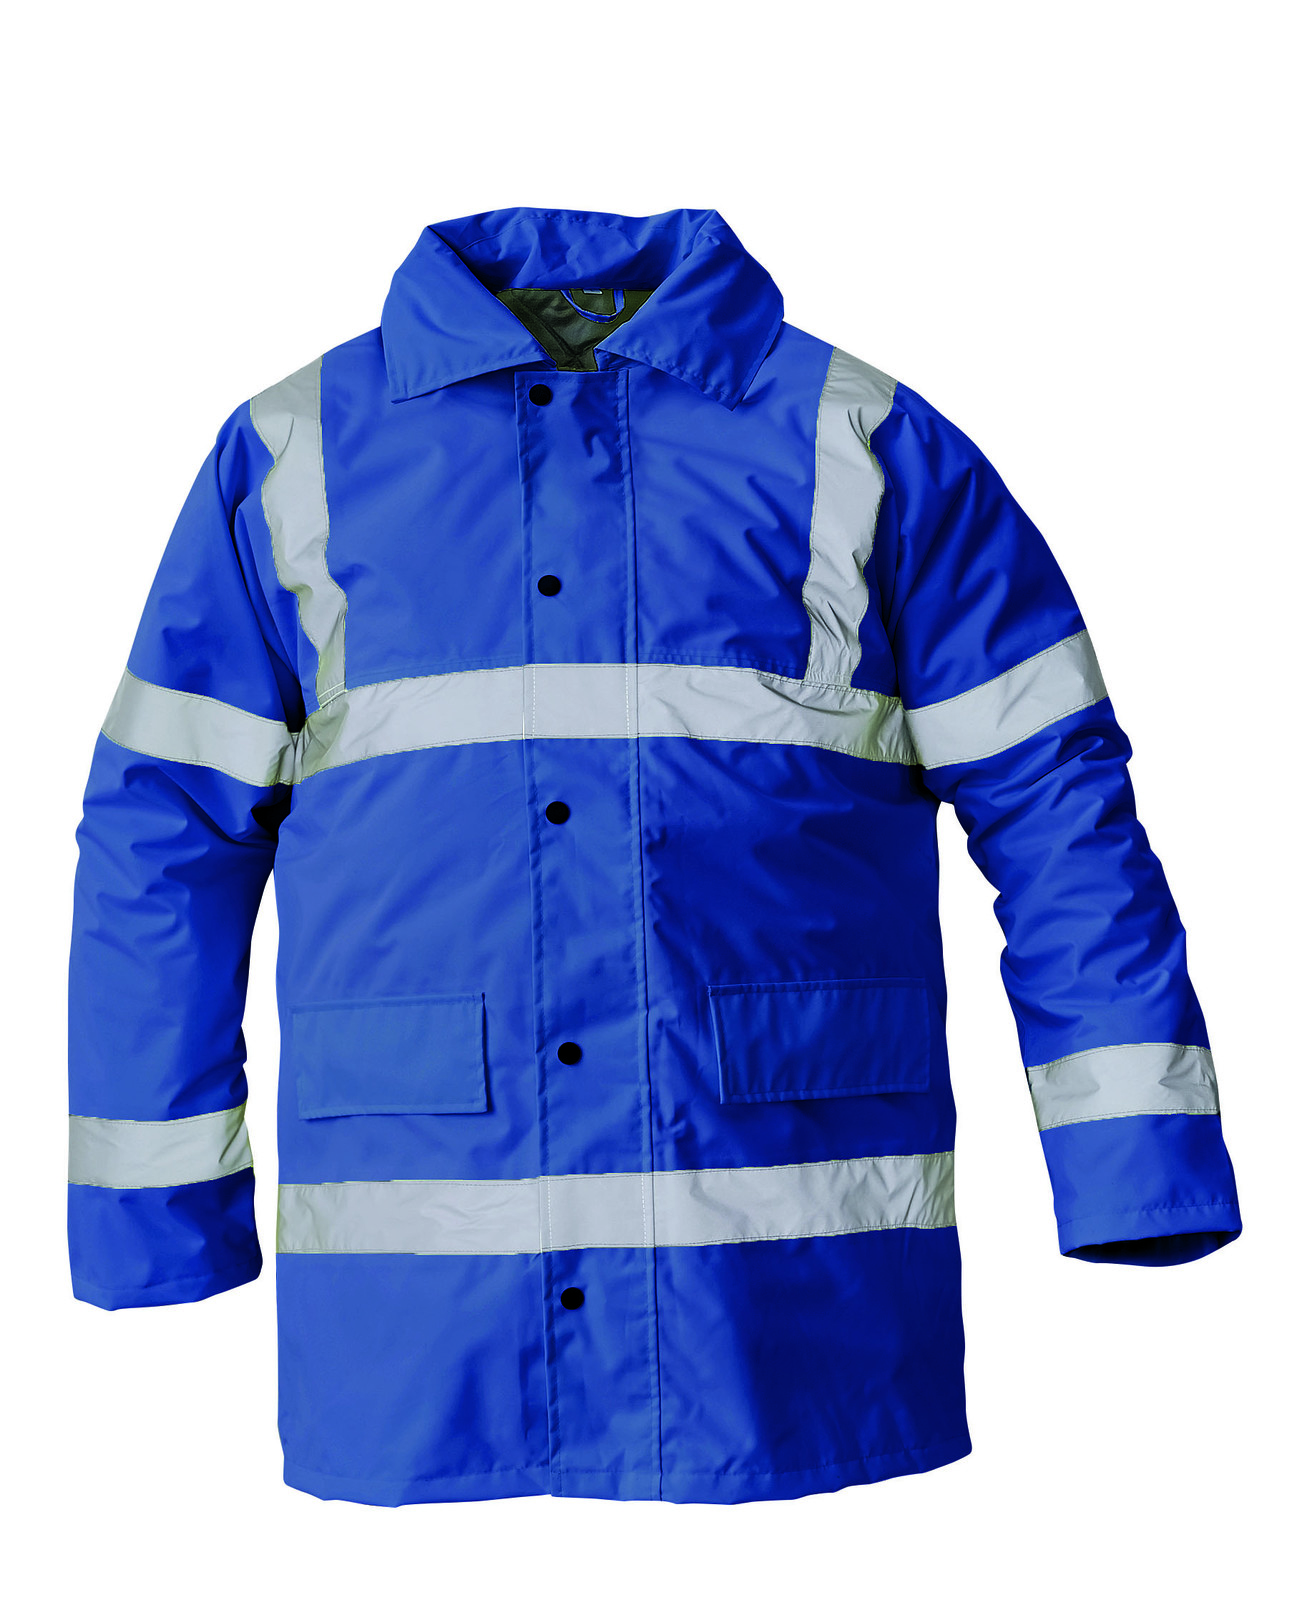 Ľahká zateplená reflexná bunda Sefton - veľkosť: M, farba: royal blue